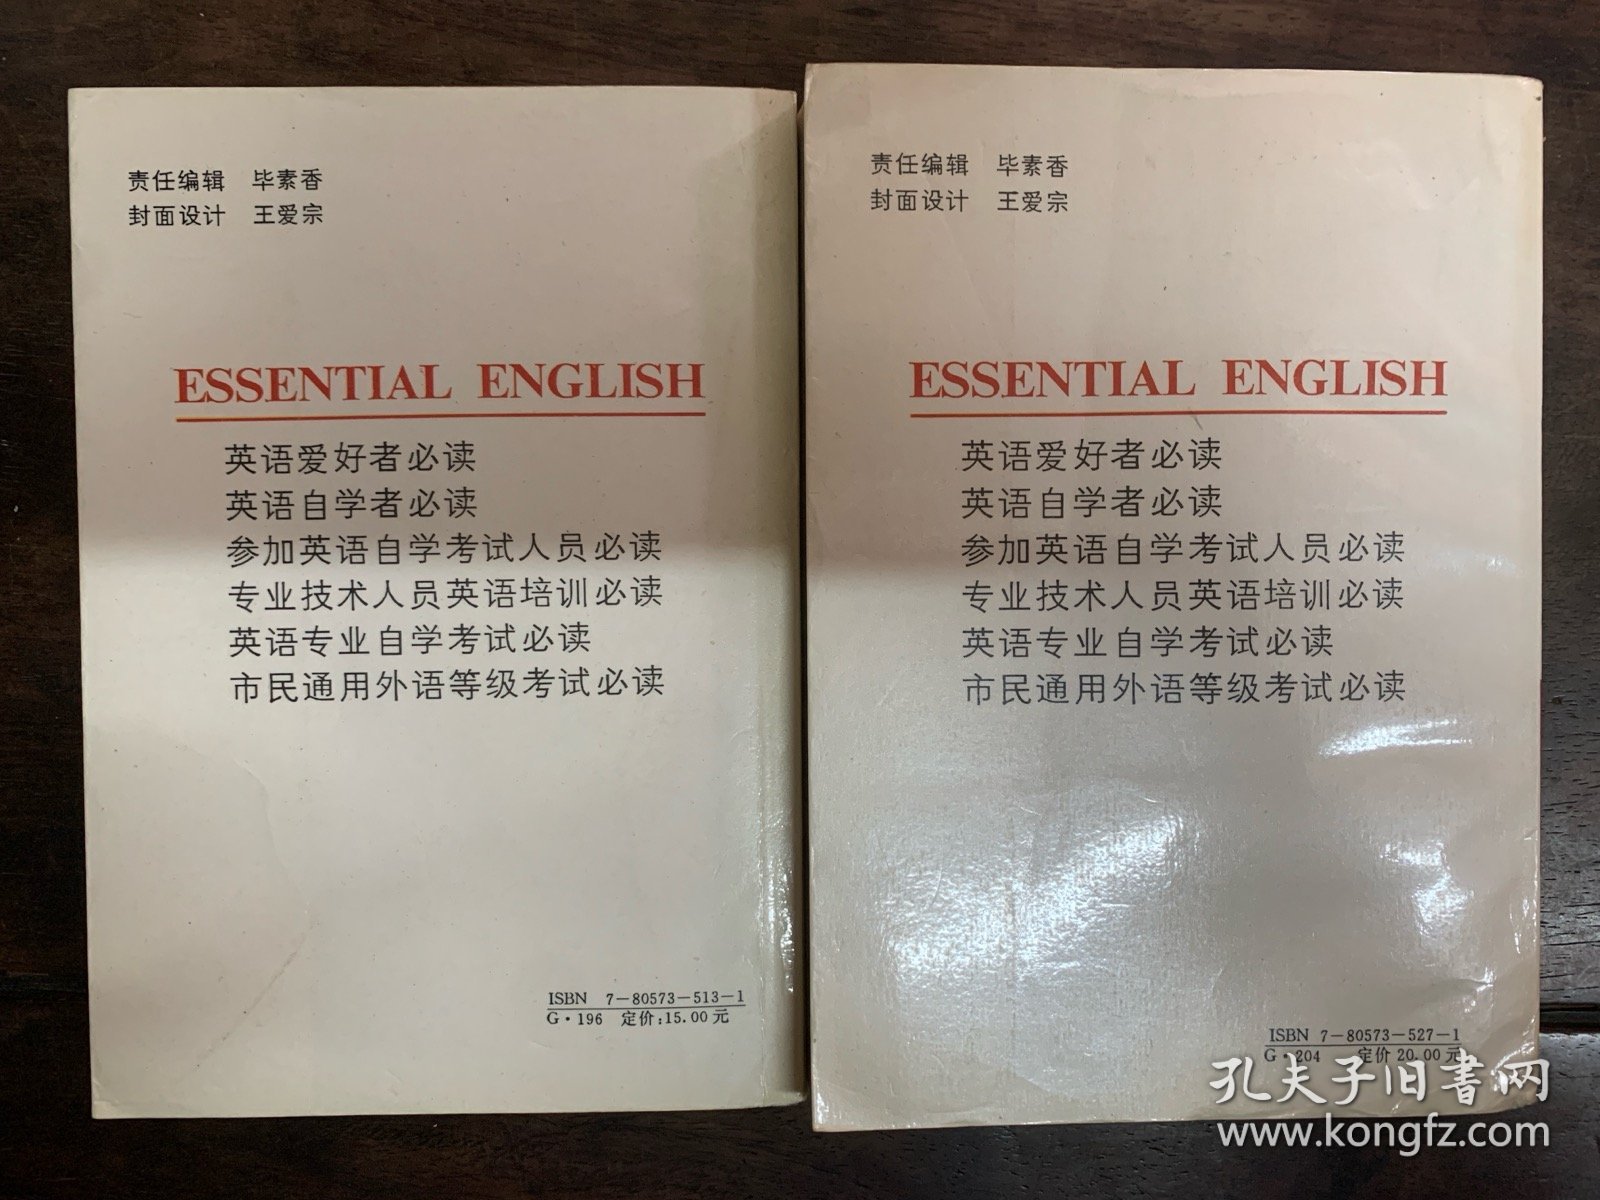 英语专业自学考试推荐 市民通用外语等级考试 教材 基础英语教程 第一册 第二册 合售